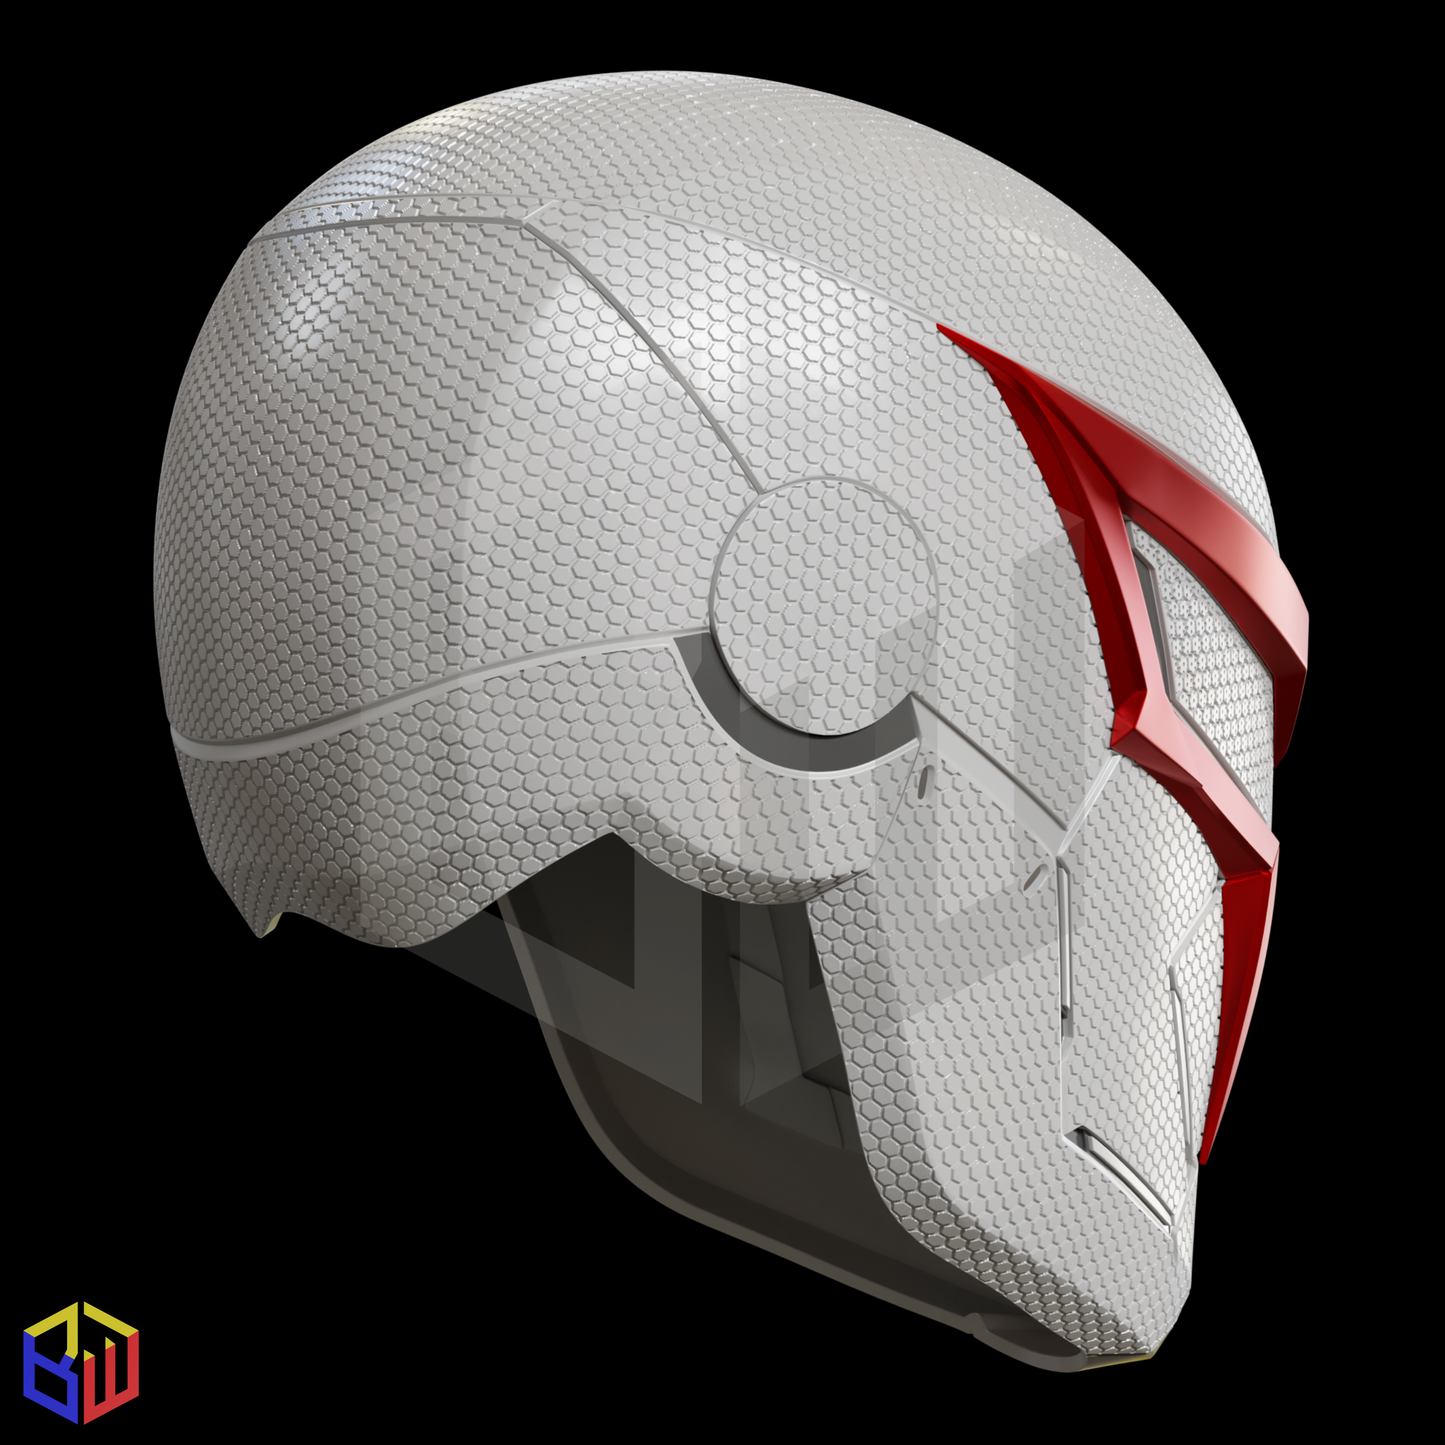 Spider-Man 2099 V2 Helmet